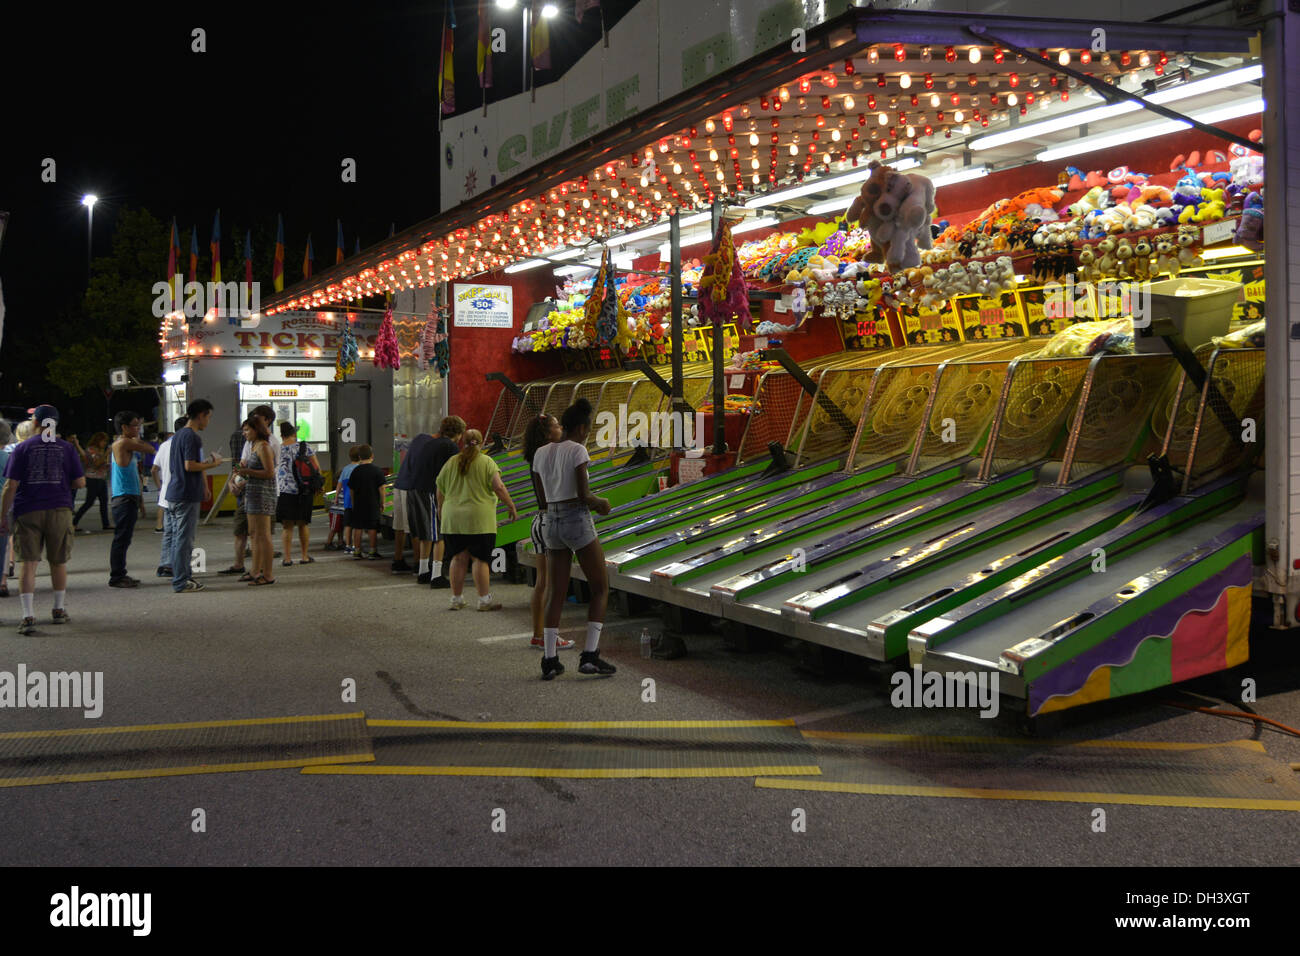 carnival at night Stock Photo